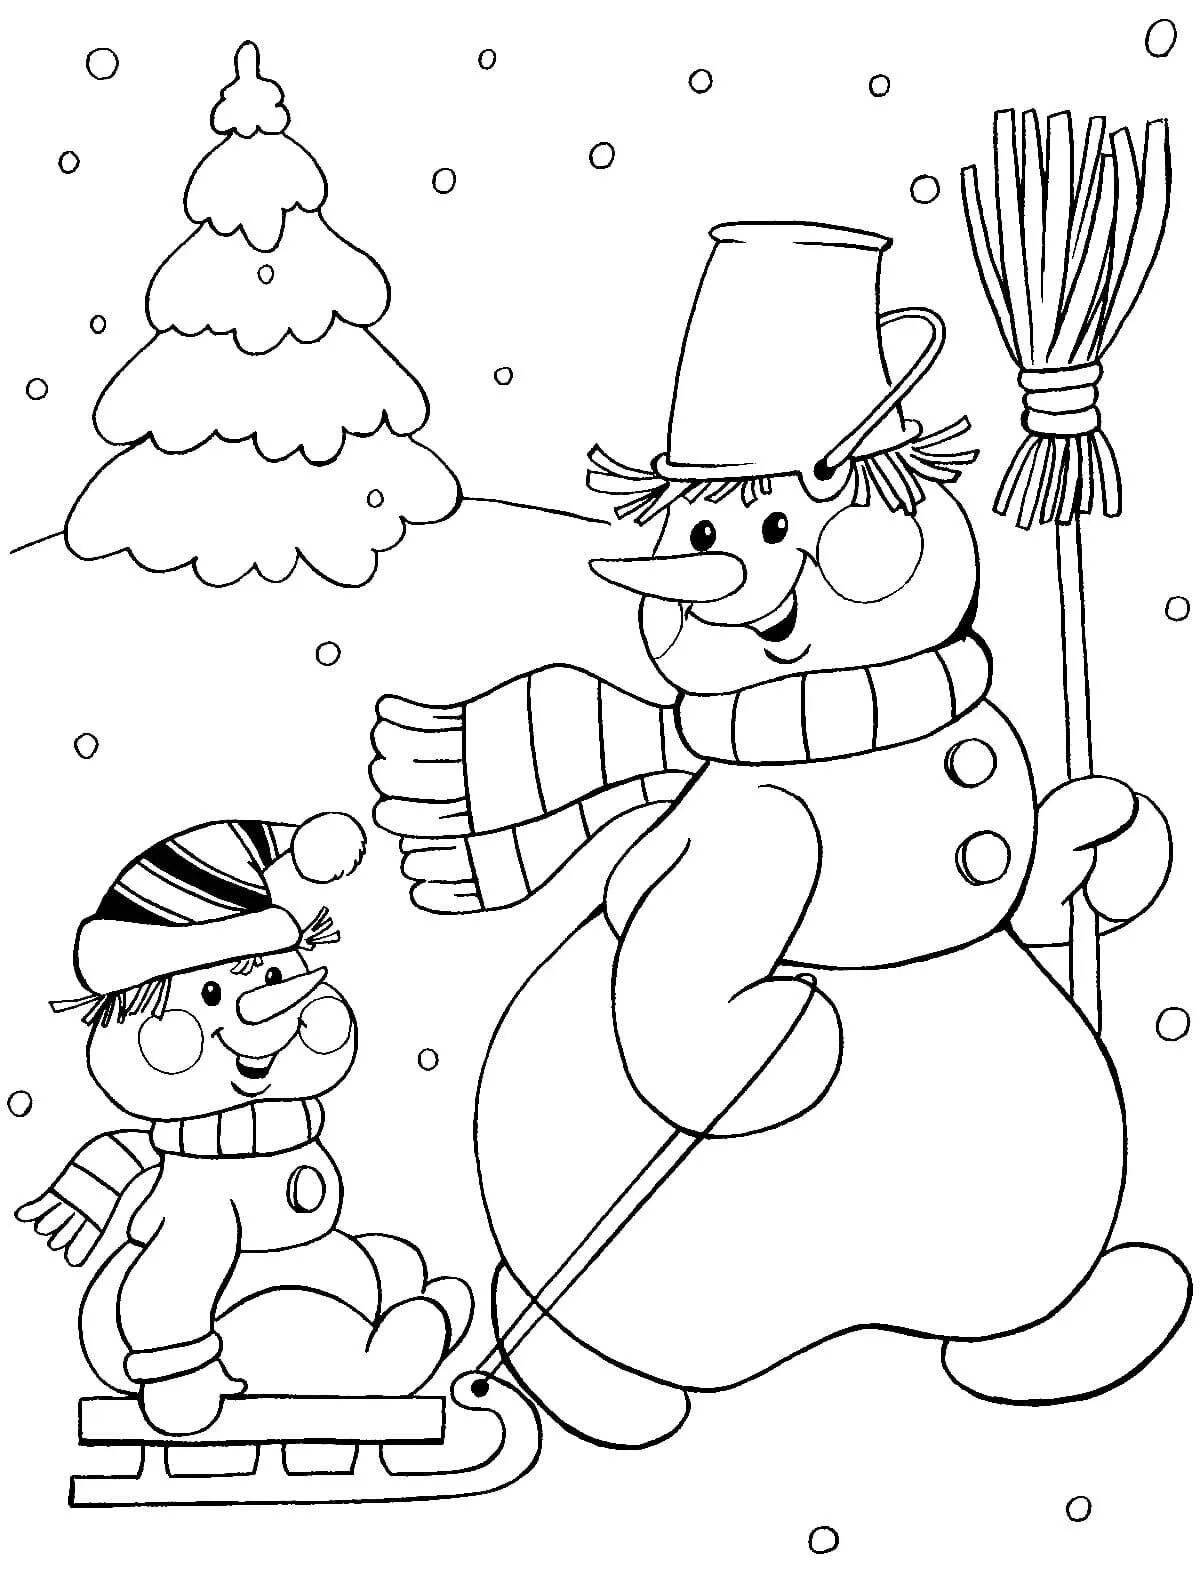 Забавная детская раскраска снеговик